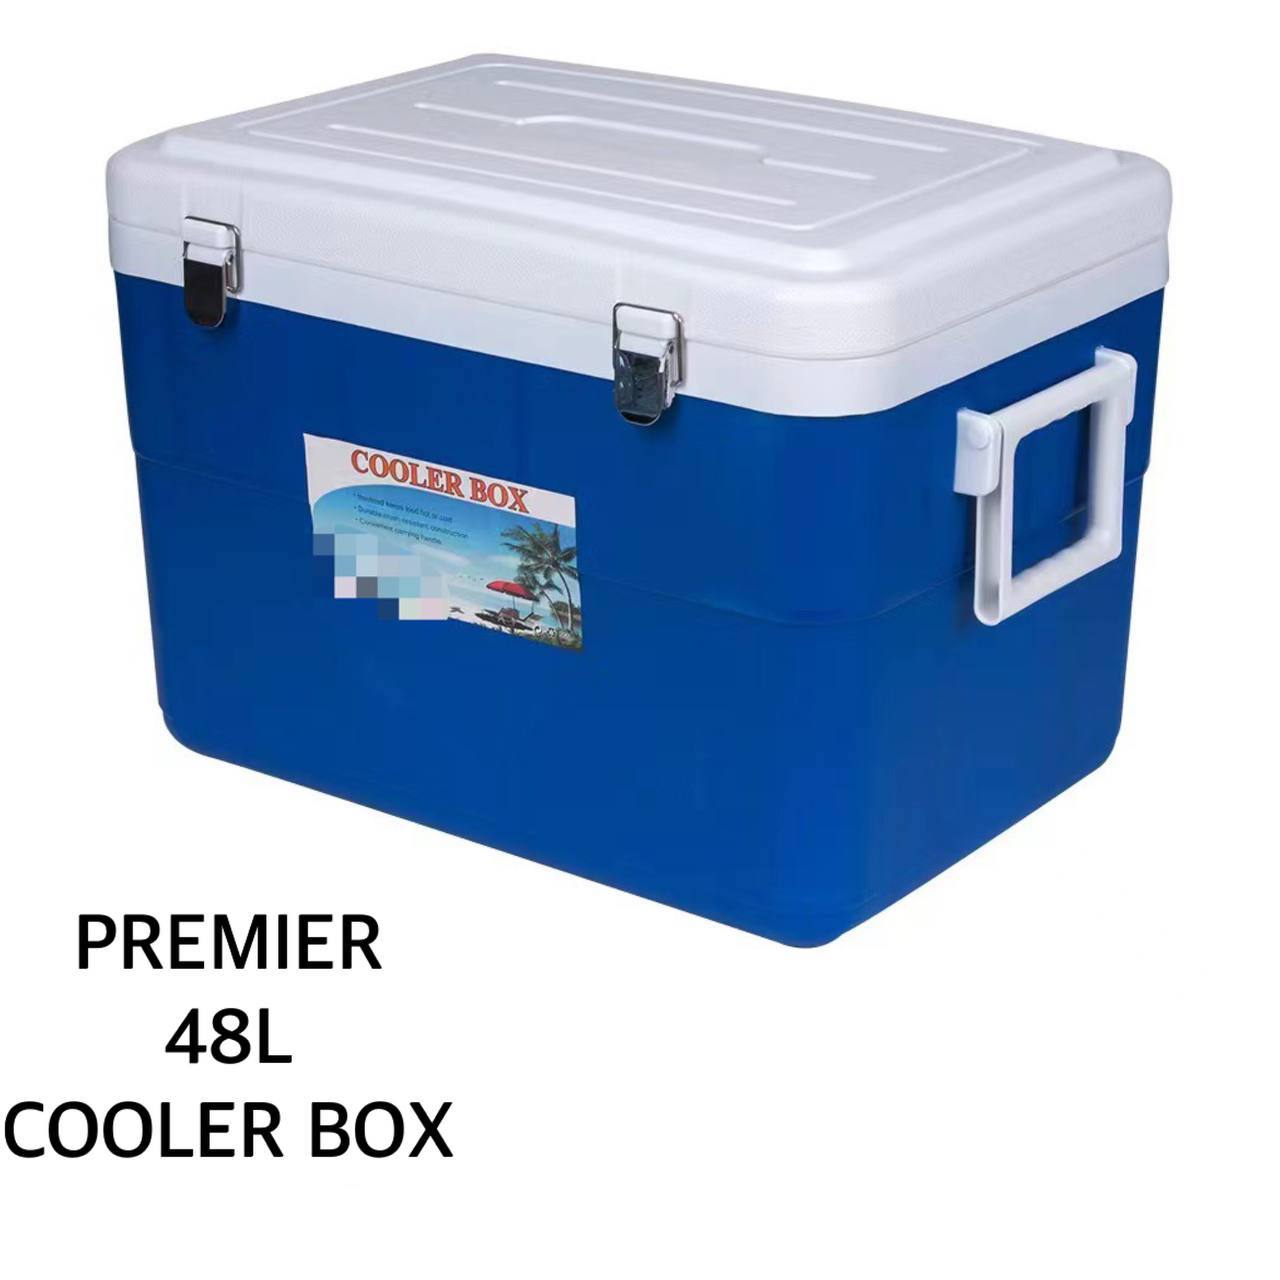 Premier 48L COOLER BOX